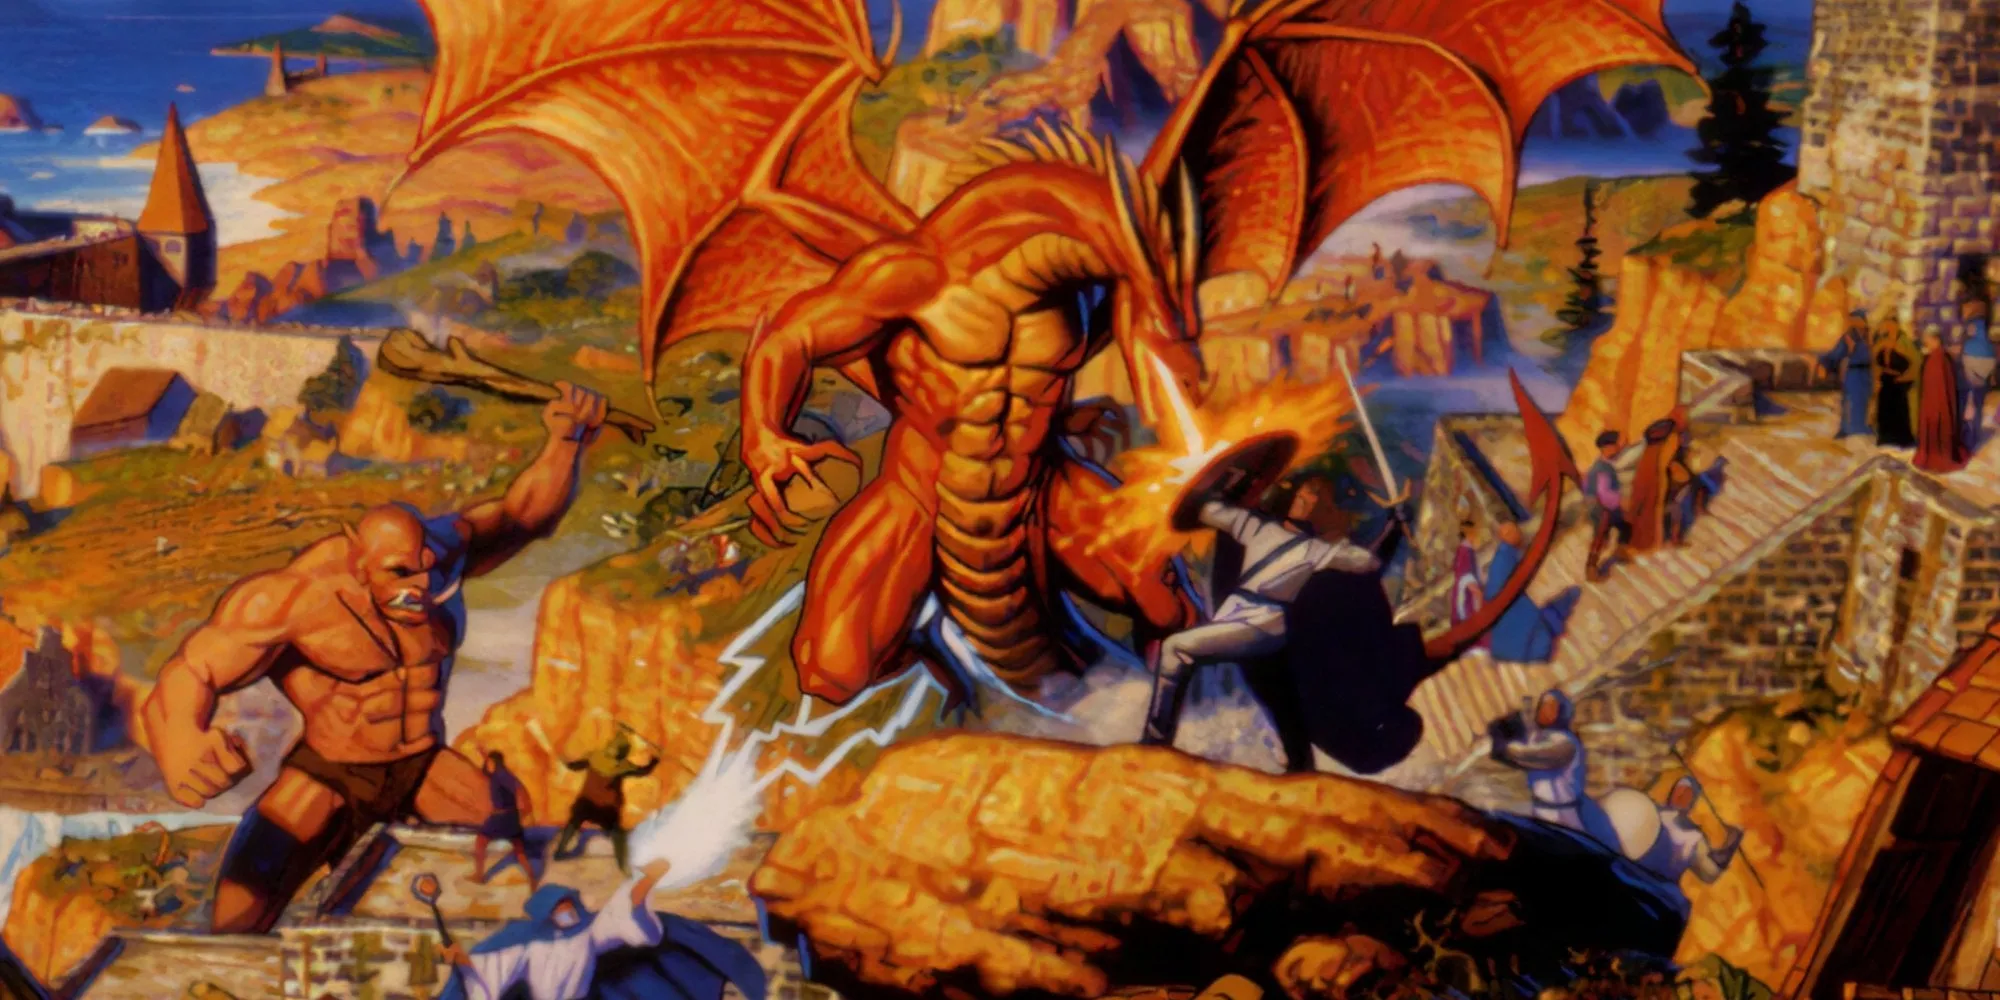 Diversi personaggi di Ultima Online in combattimento